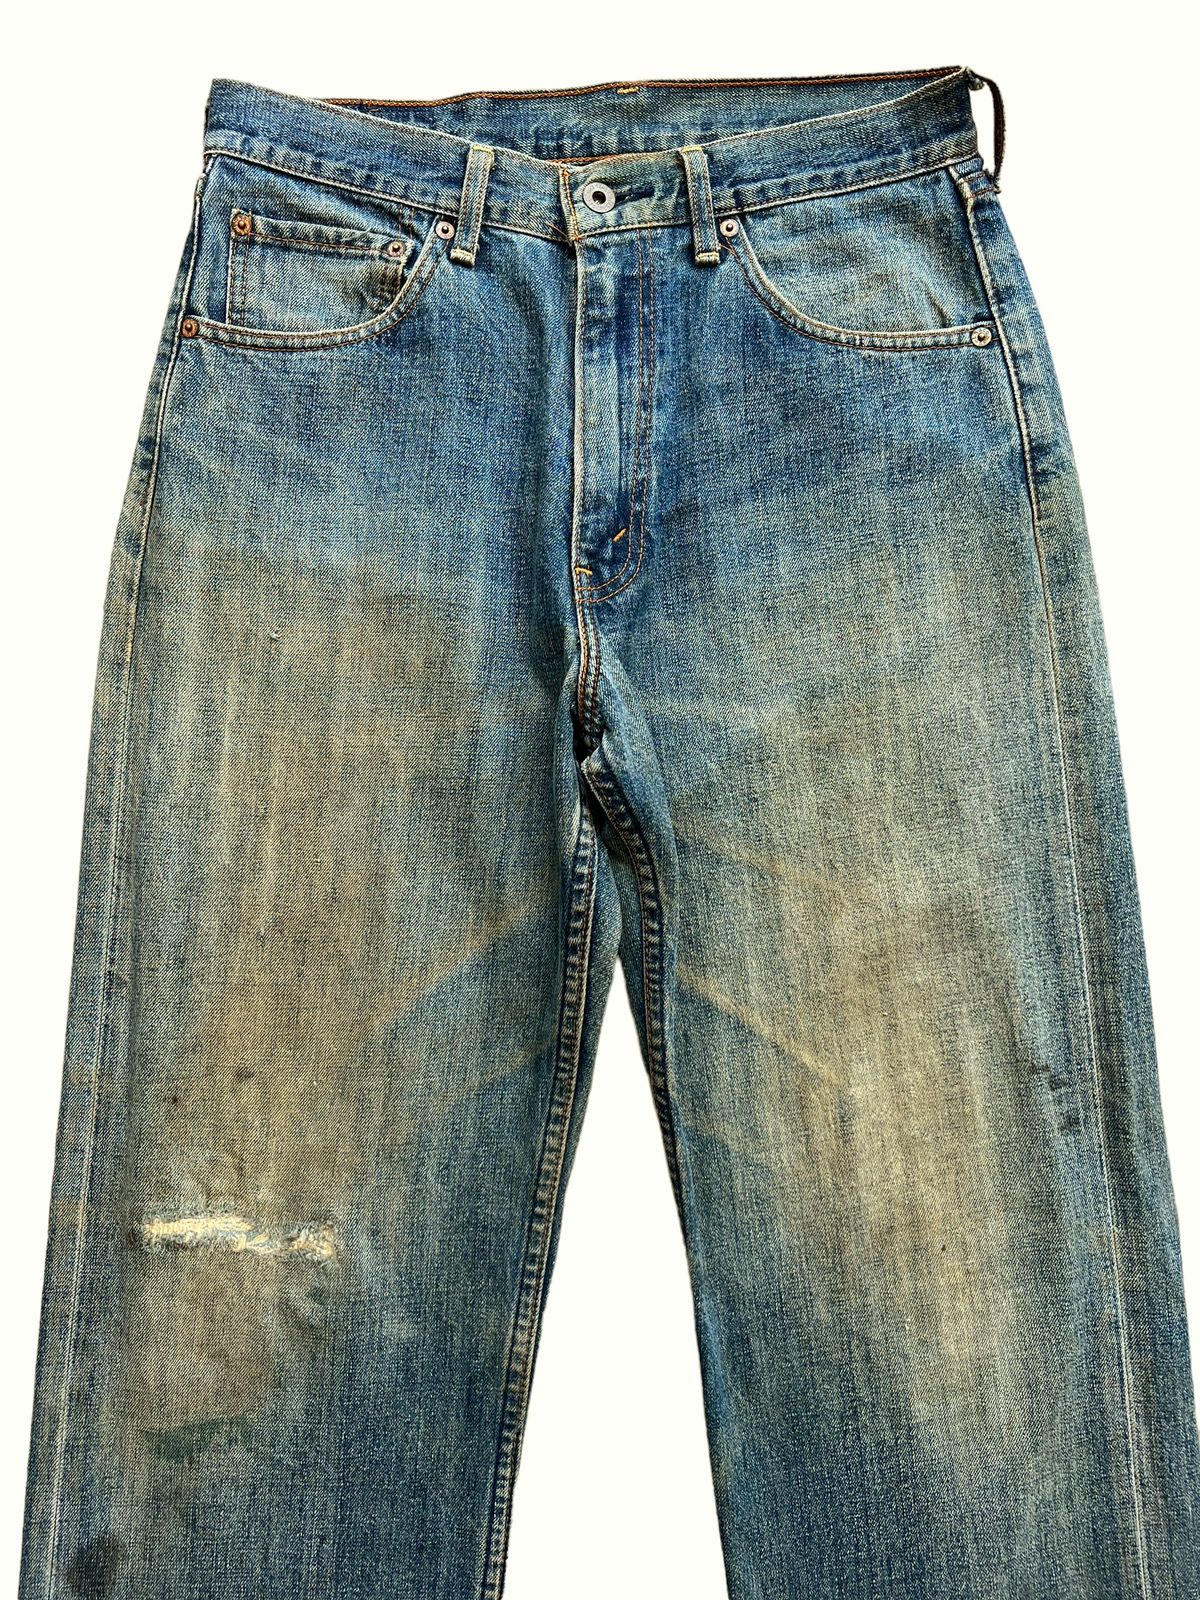 Vintage 90s Levis Distressed Mudwash Patch Denim Jeans 30x35 - 3